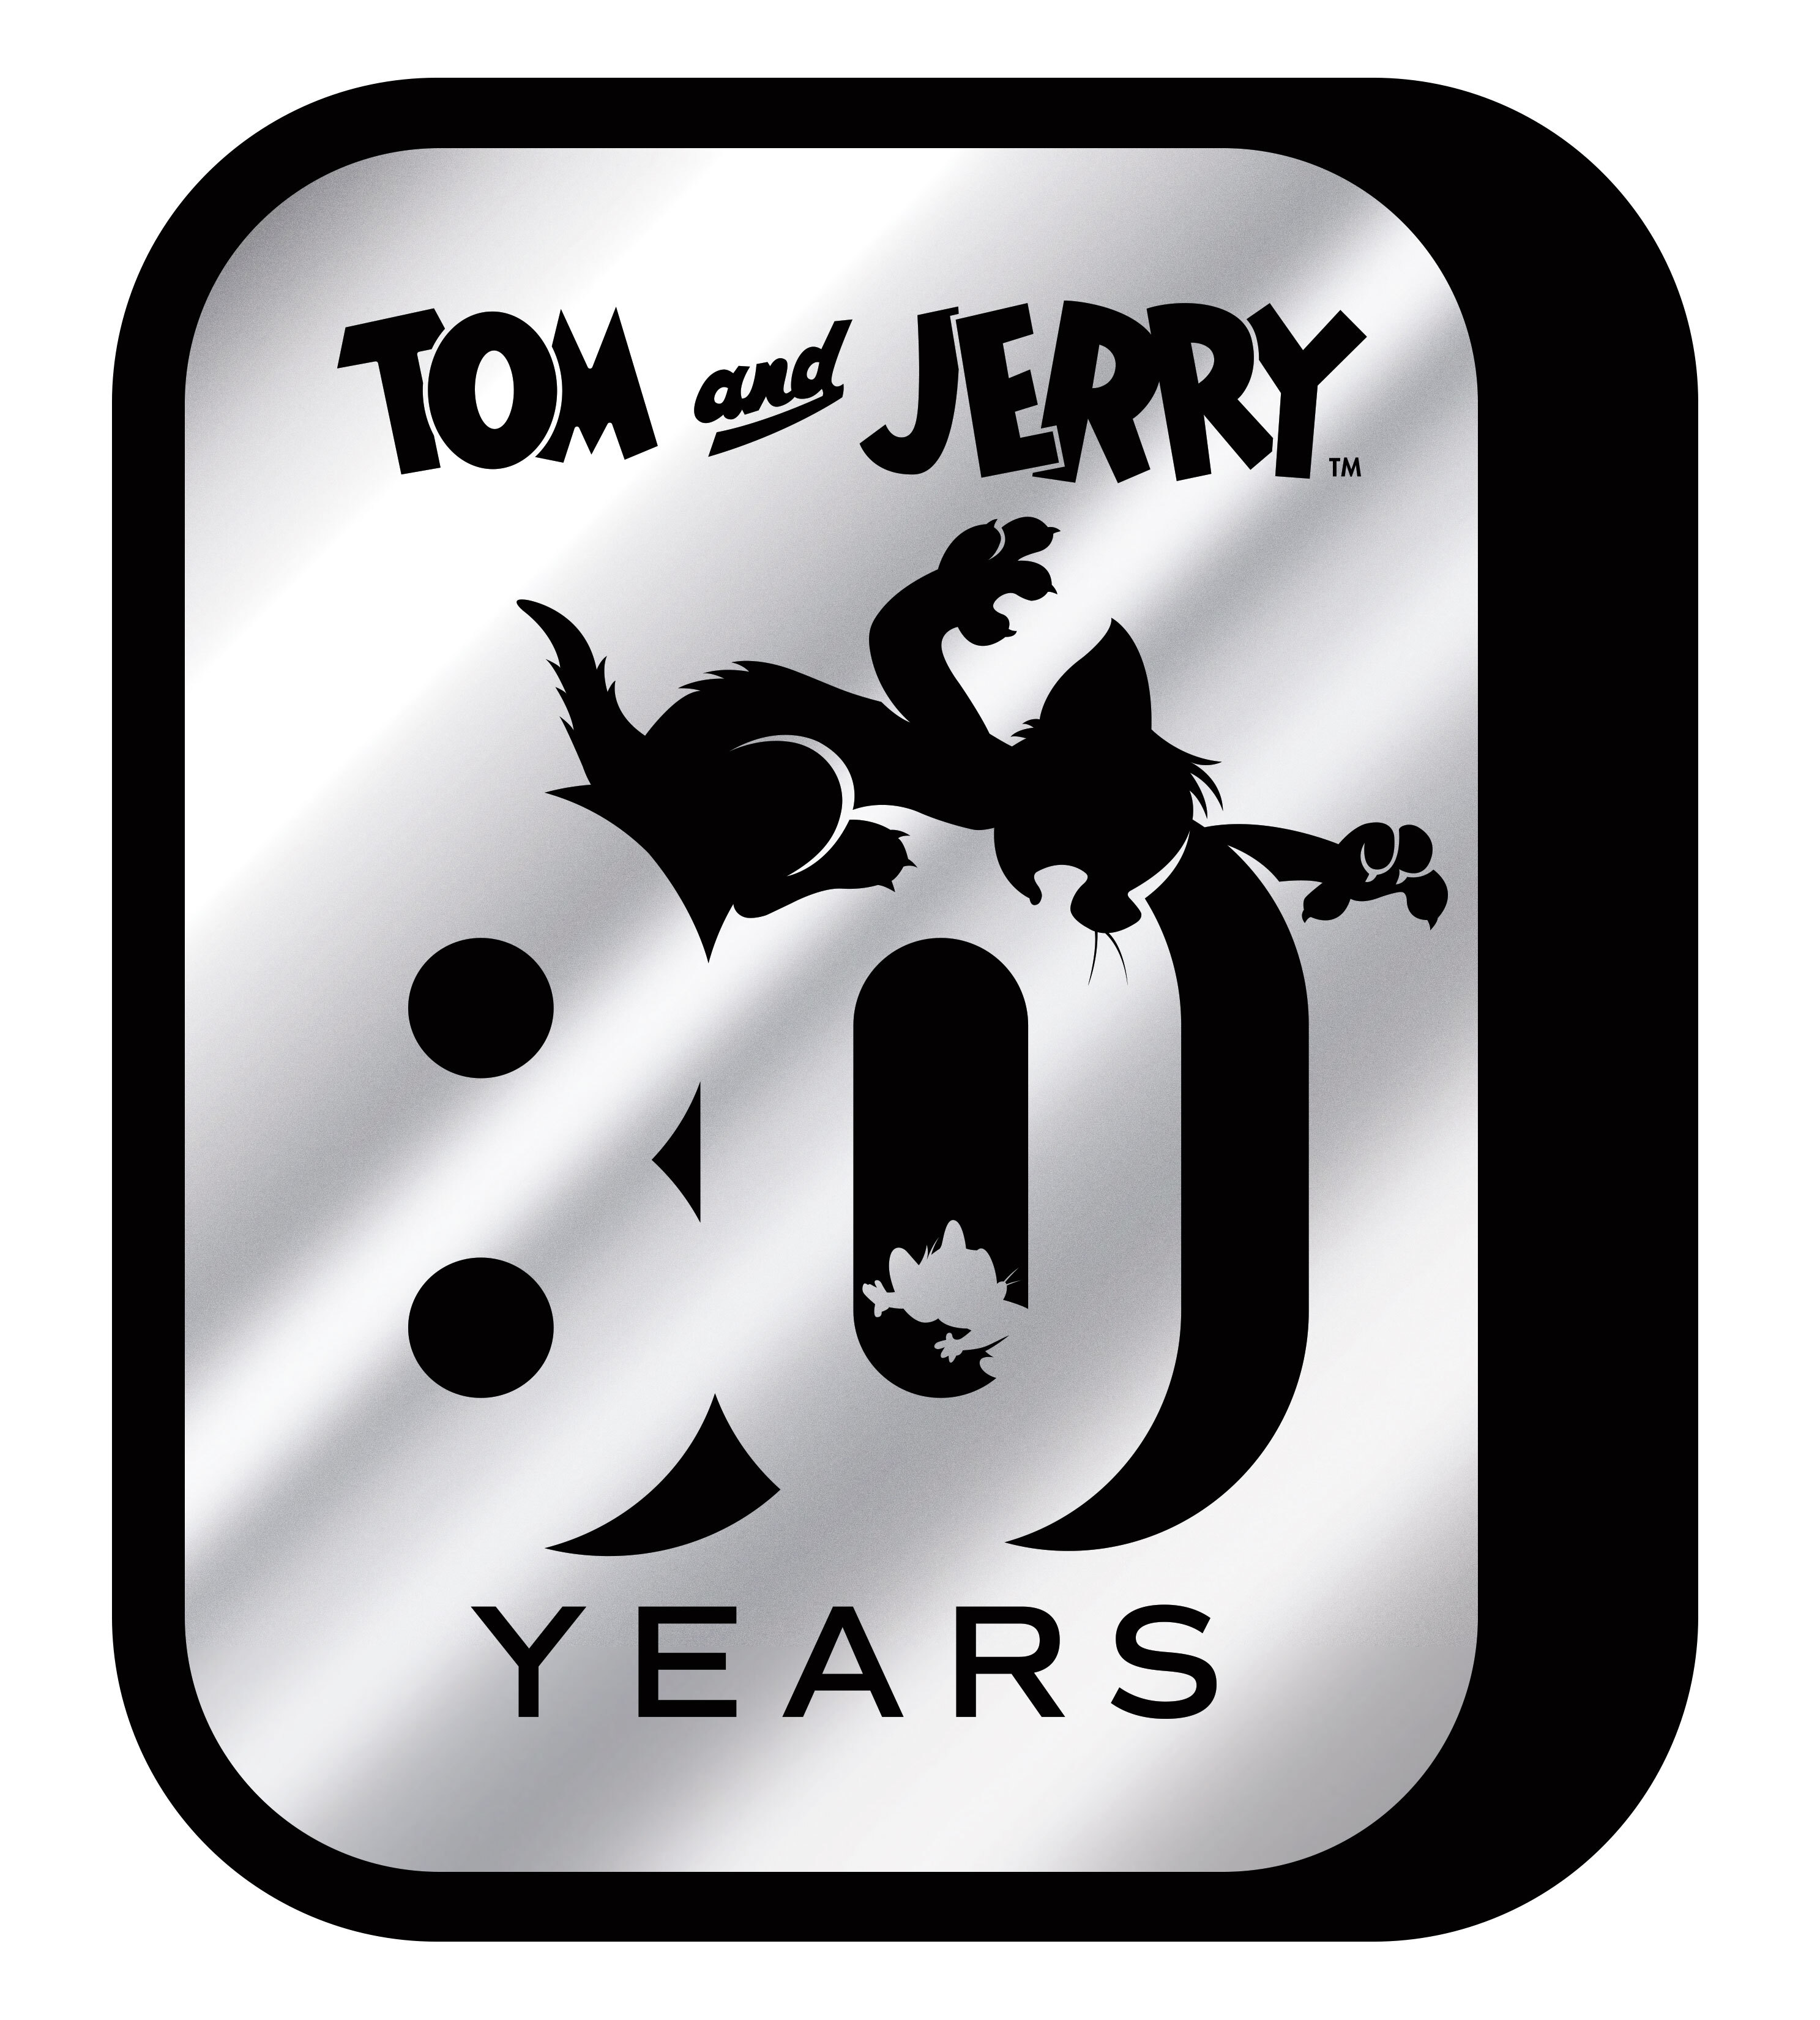 年に誕生80周年を迎える 大人気アニメーション トムとジェリー 最新テレビシリーズ トムとジェリー ショー 2 19年8月18日 日 からnhk Bsプレミアムで放送開始 ワーナー ブラザース ジャパン合同会社のプレスリリース